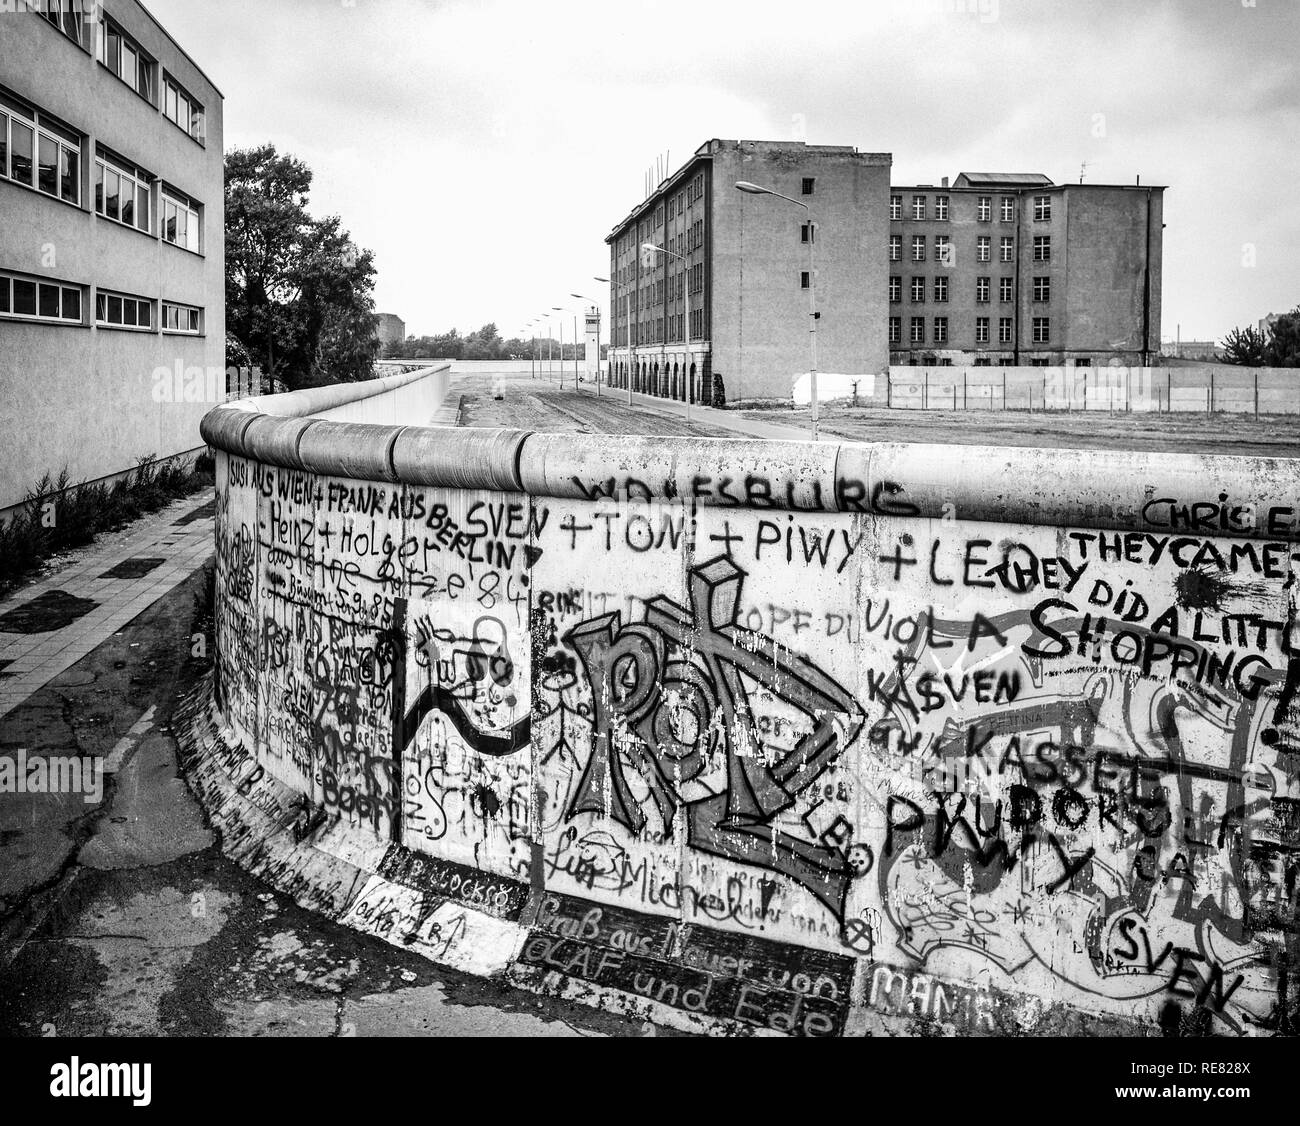 Agosto de 1986, el muro de Berlín graffitis, franja de muerte, edificios de la zona oriental de Berlín, Berlín occidental, Alemania, Europa, Foto de stock